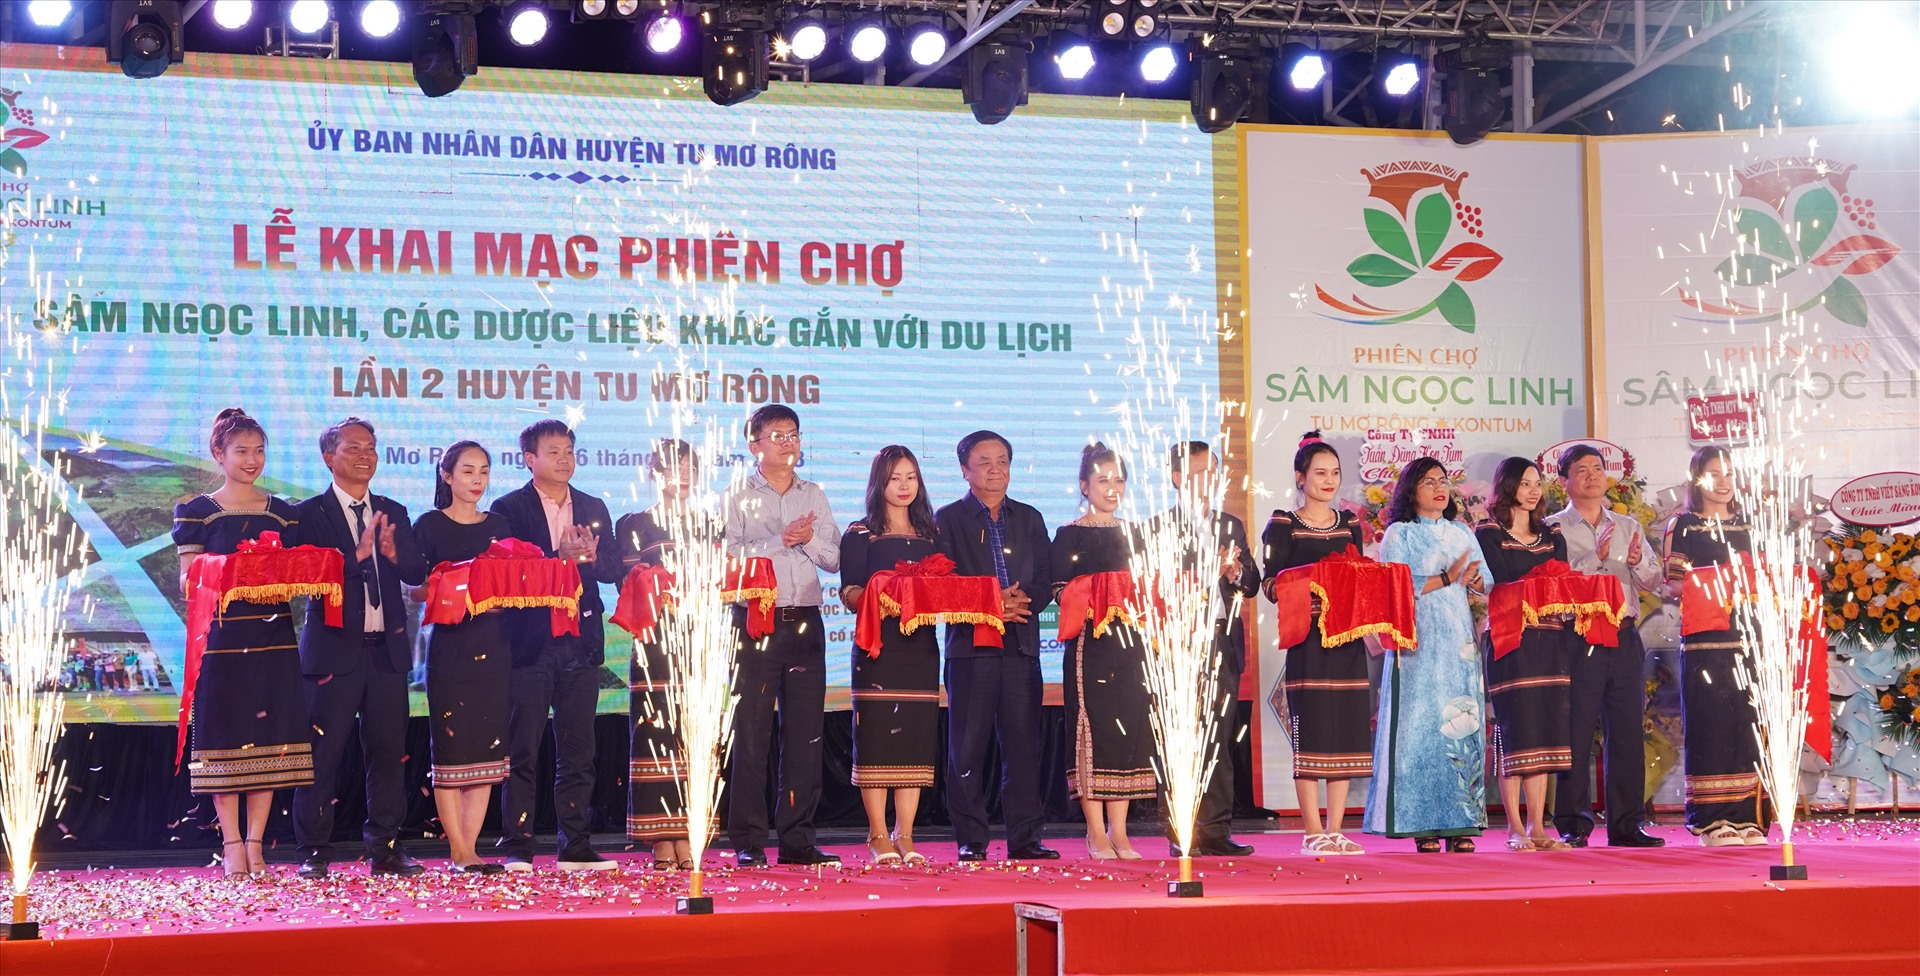 Huyện Tu Mơ Rông là thủ phủ trồng Sâm Ngọc Linh của tỉnh Kon Tum. Ảnh Hoàng Bin